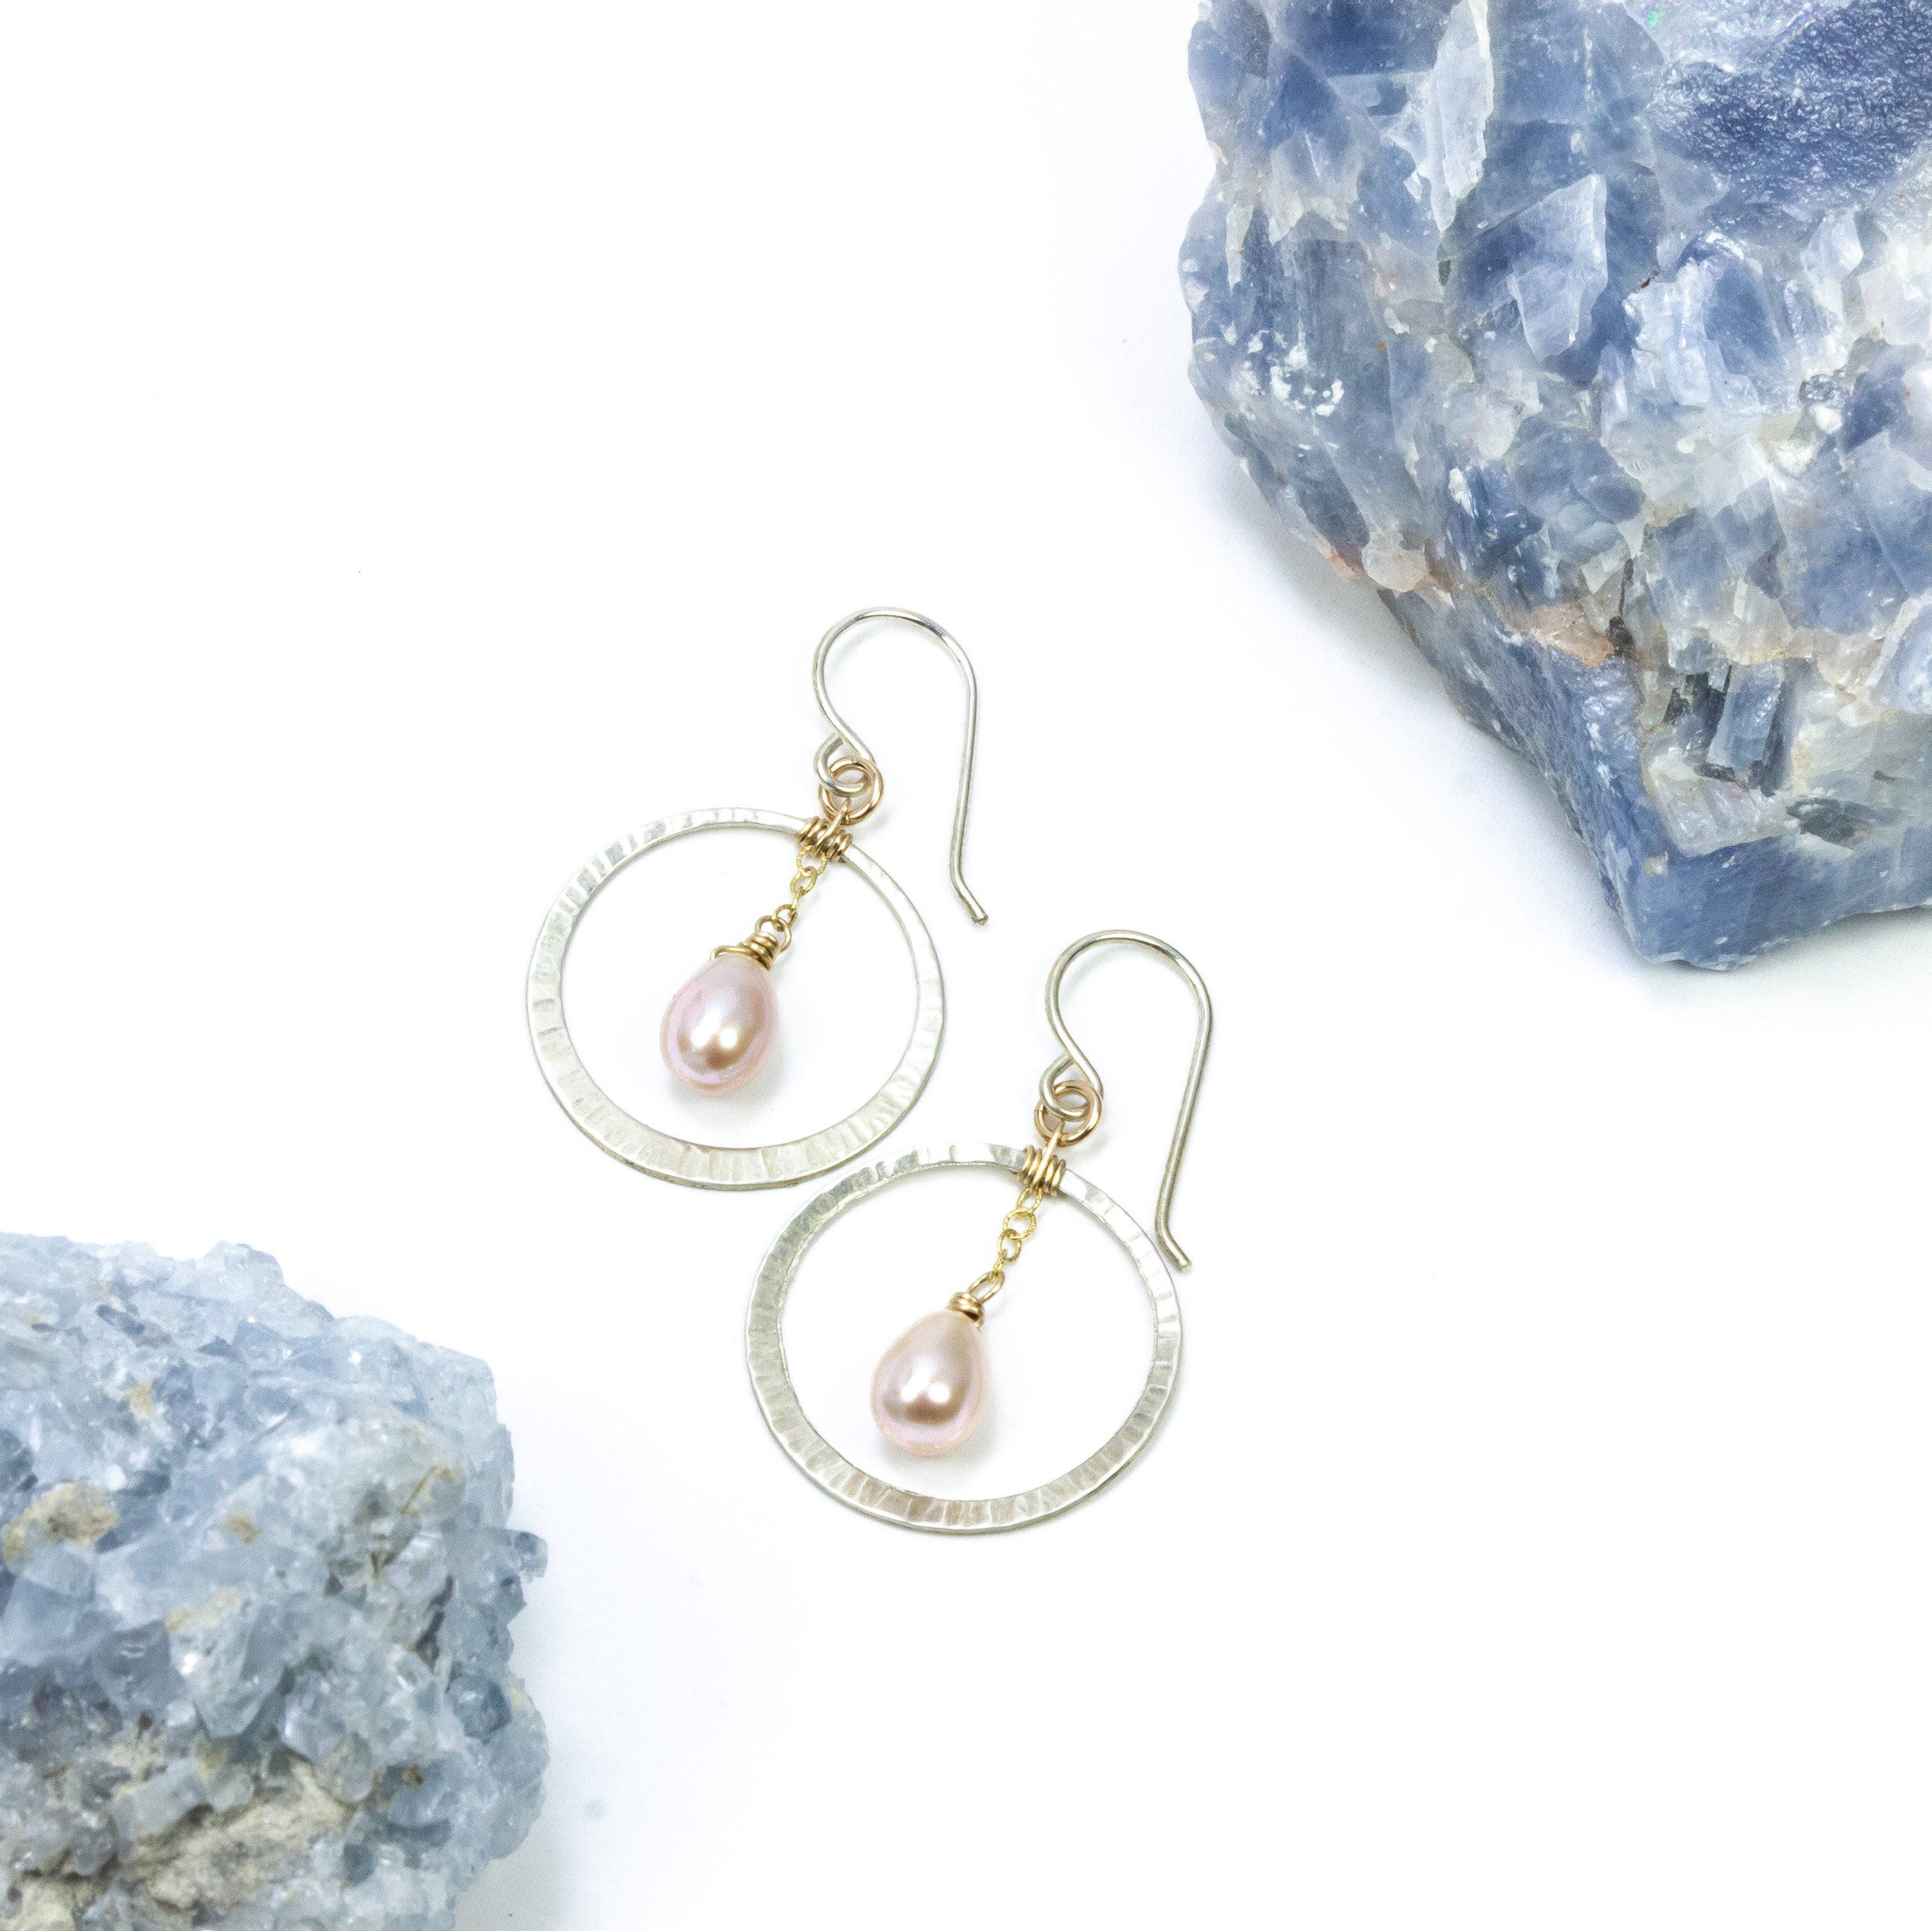 handmade sterling gold filled pearl hoop earrings laura j designs